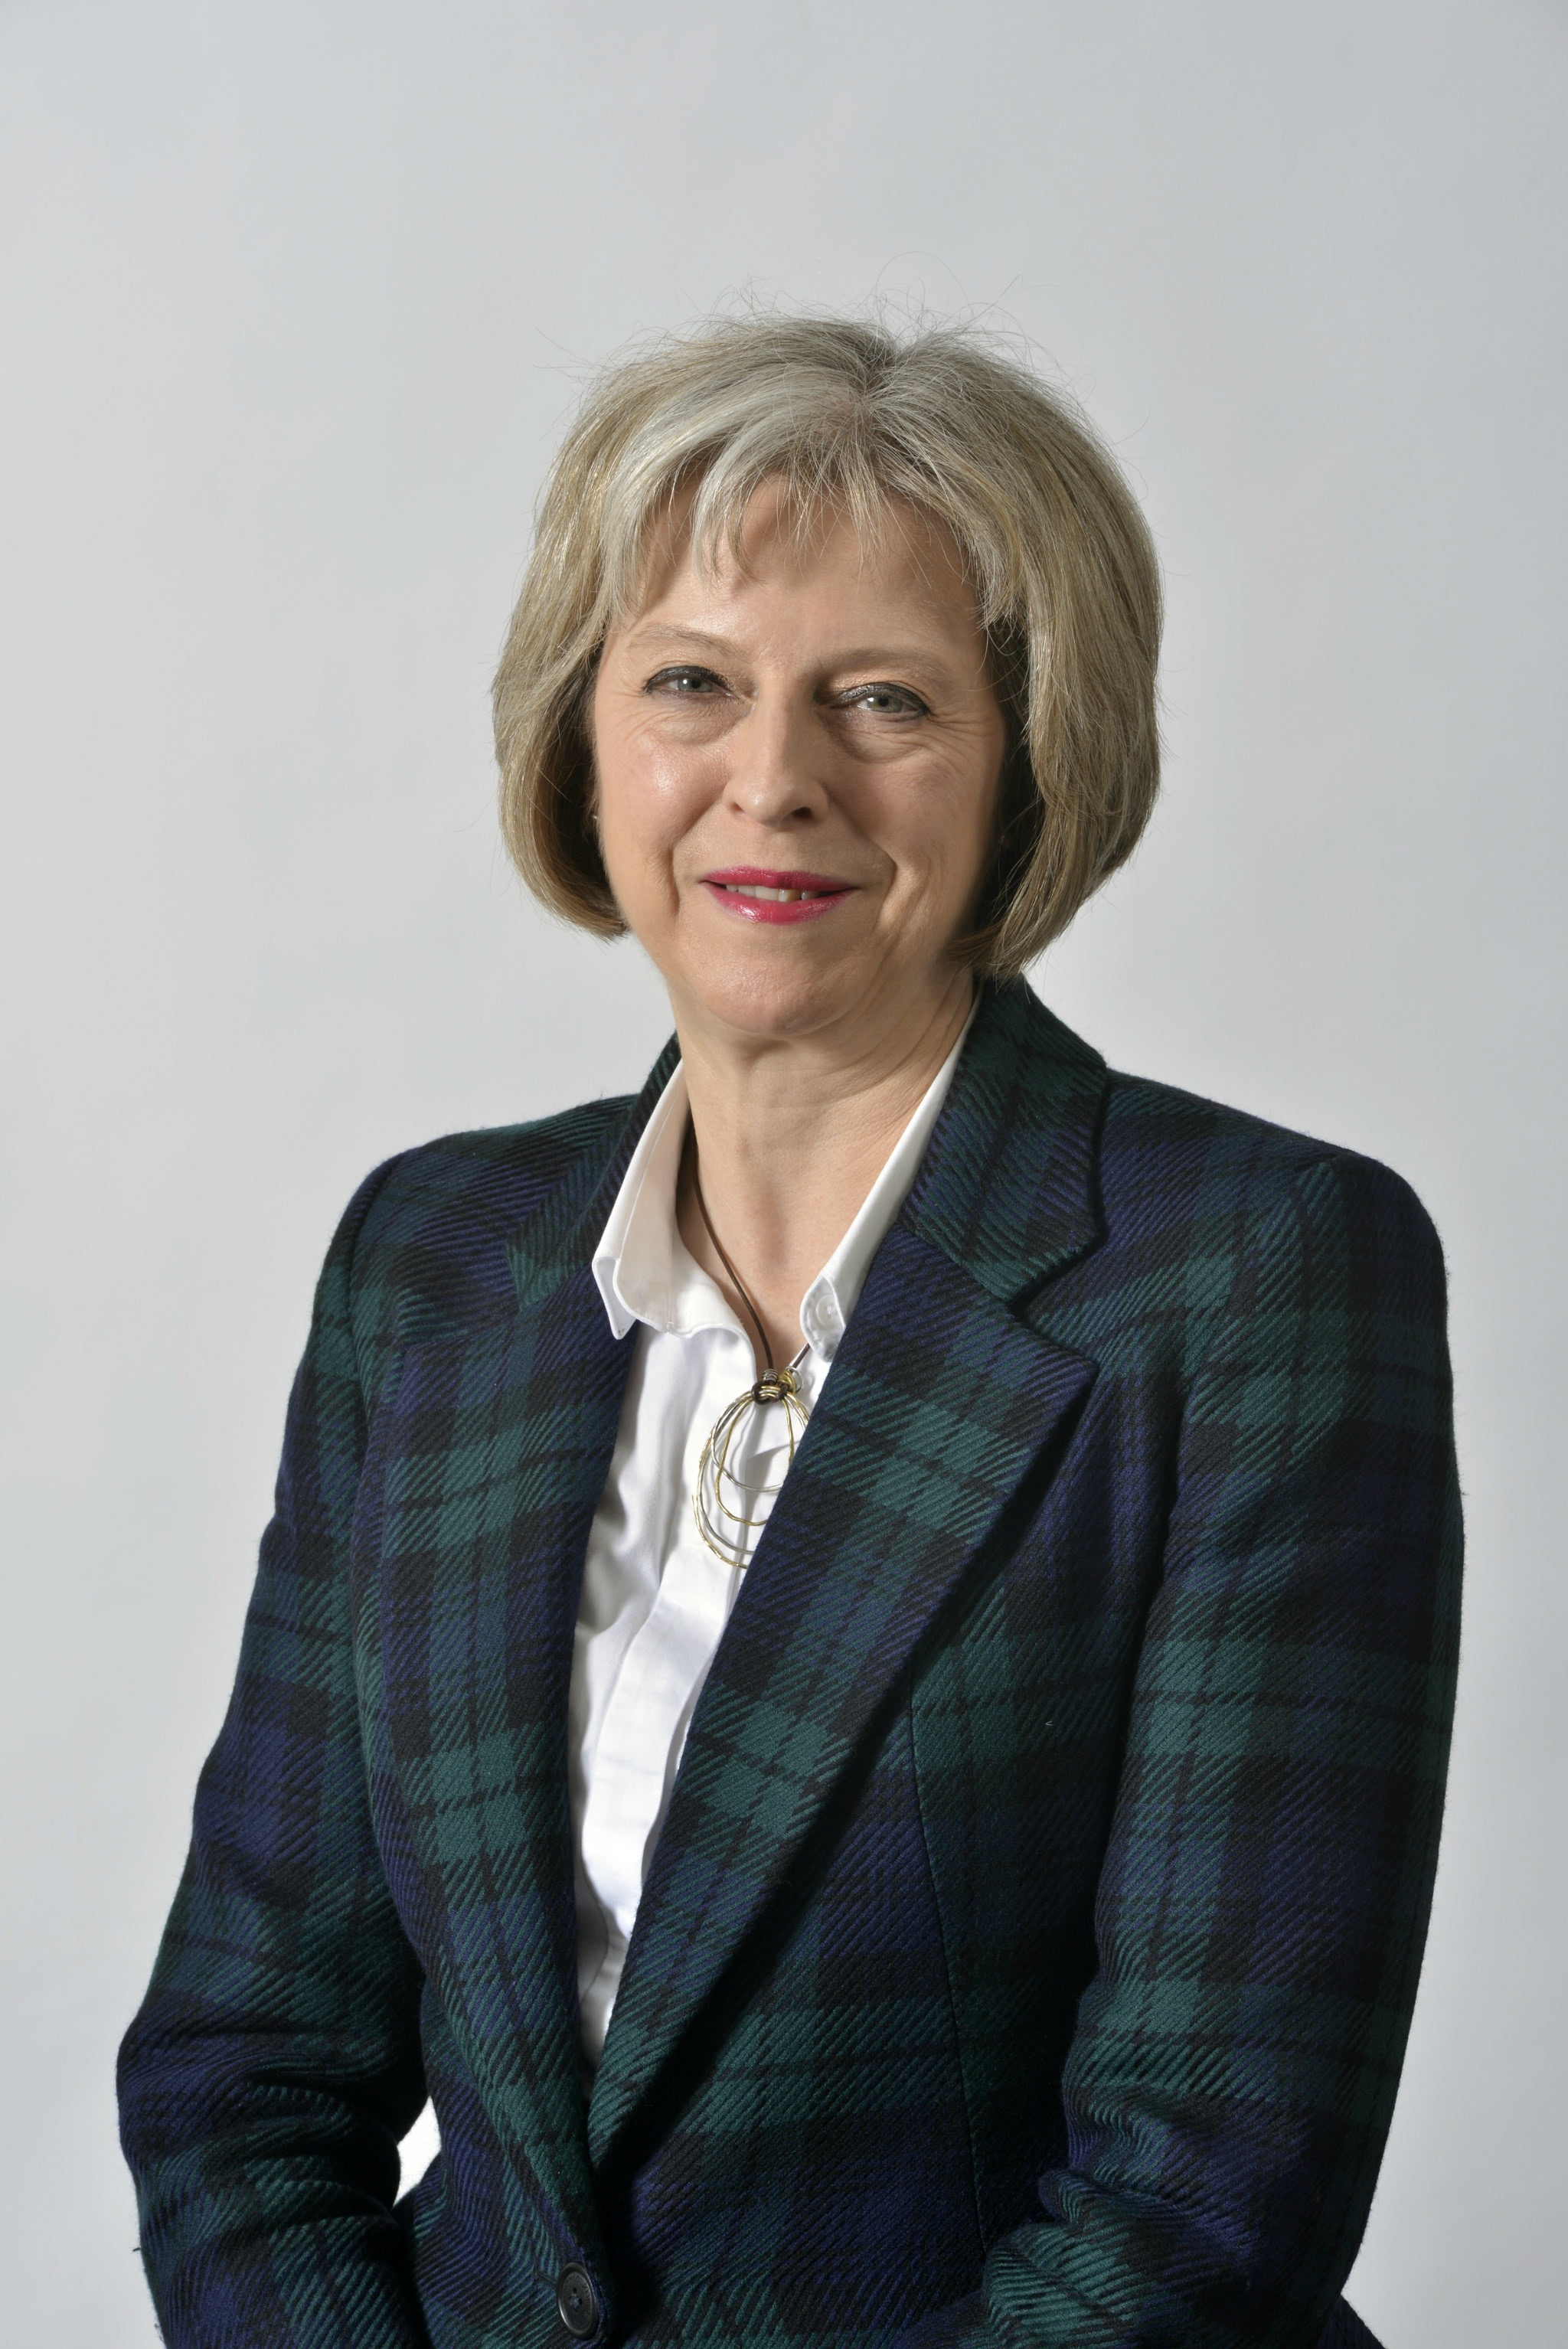 撒切尔夫人后,特蕾莎梅(Theresa May)将成英国